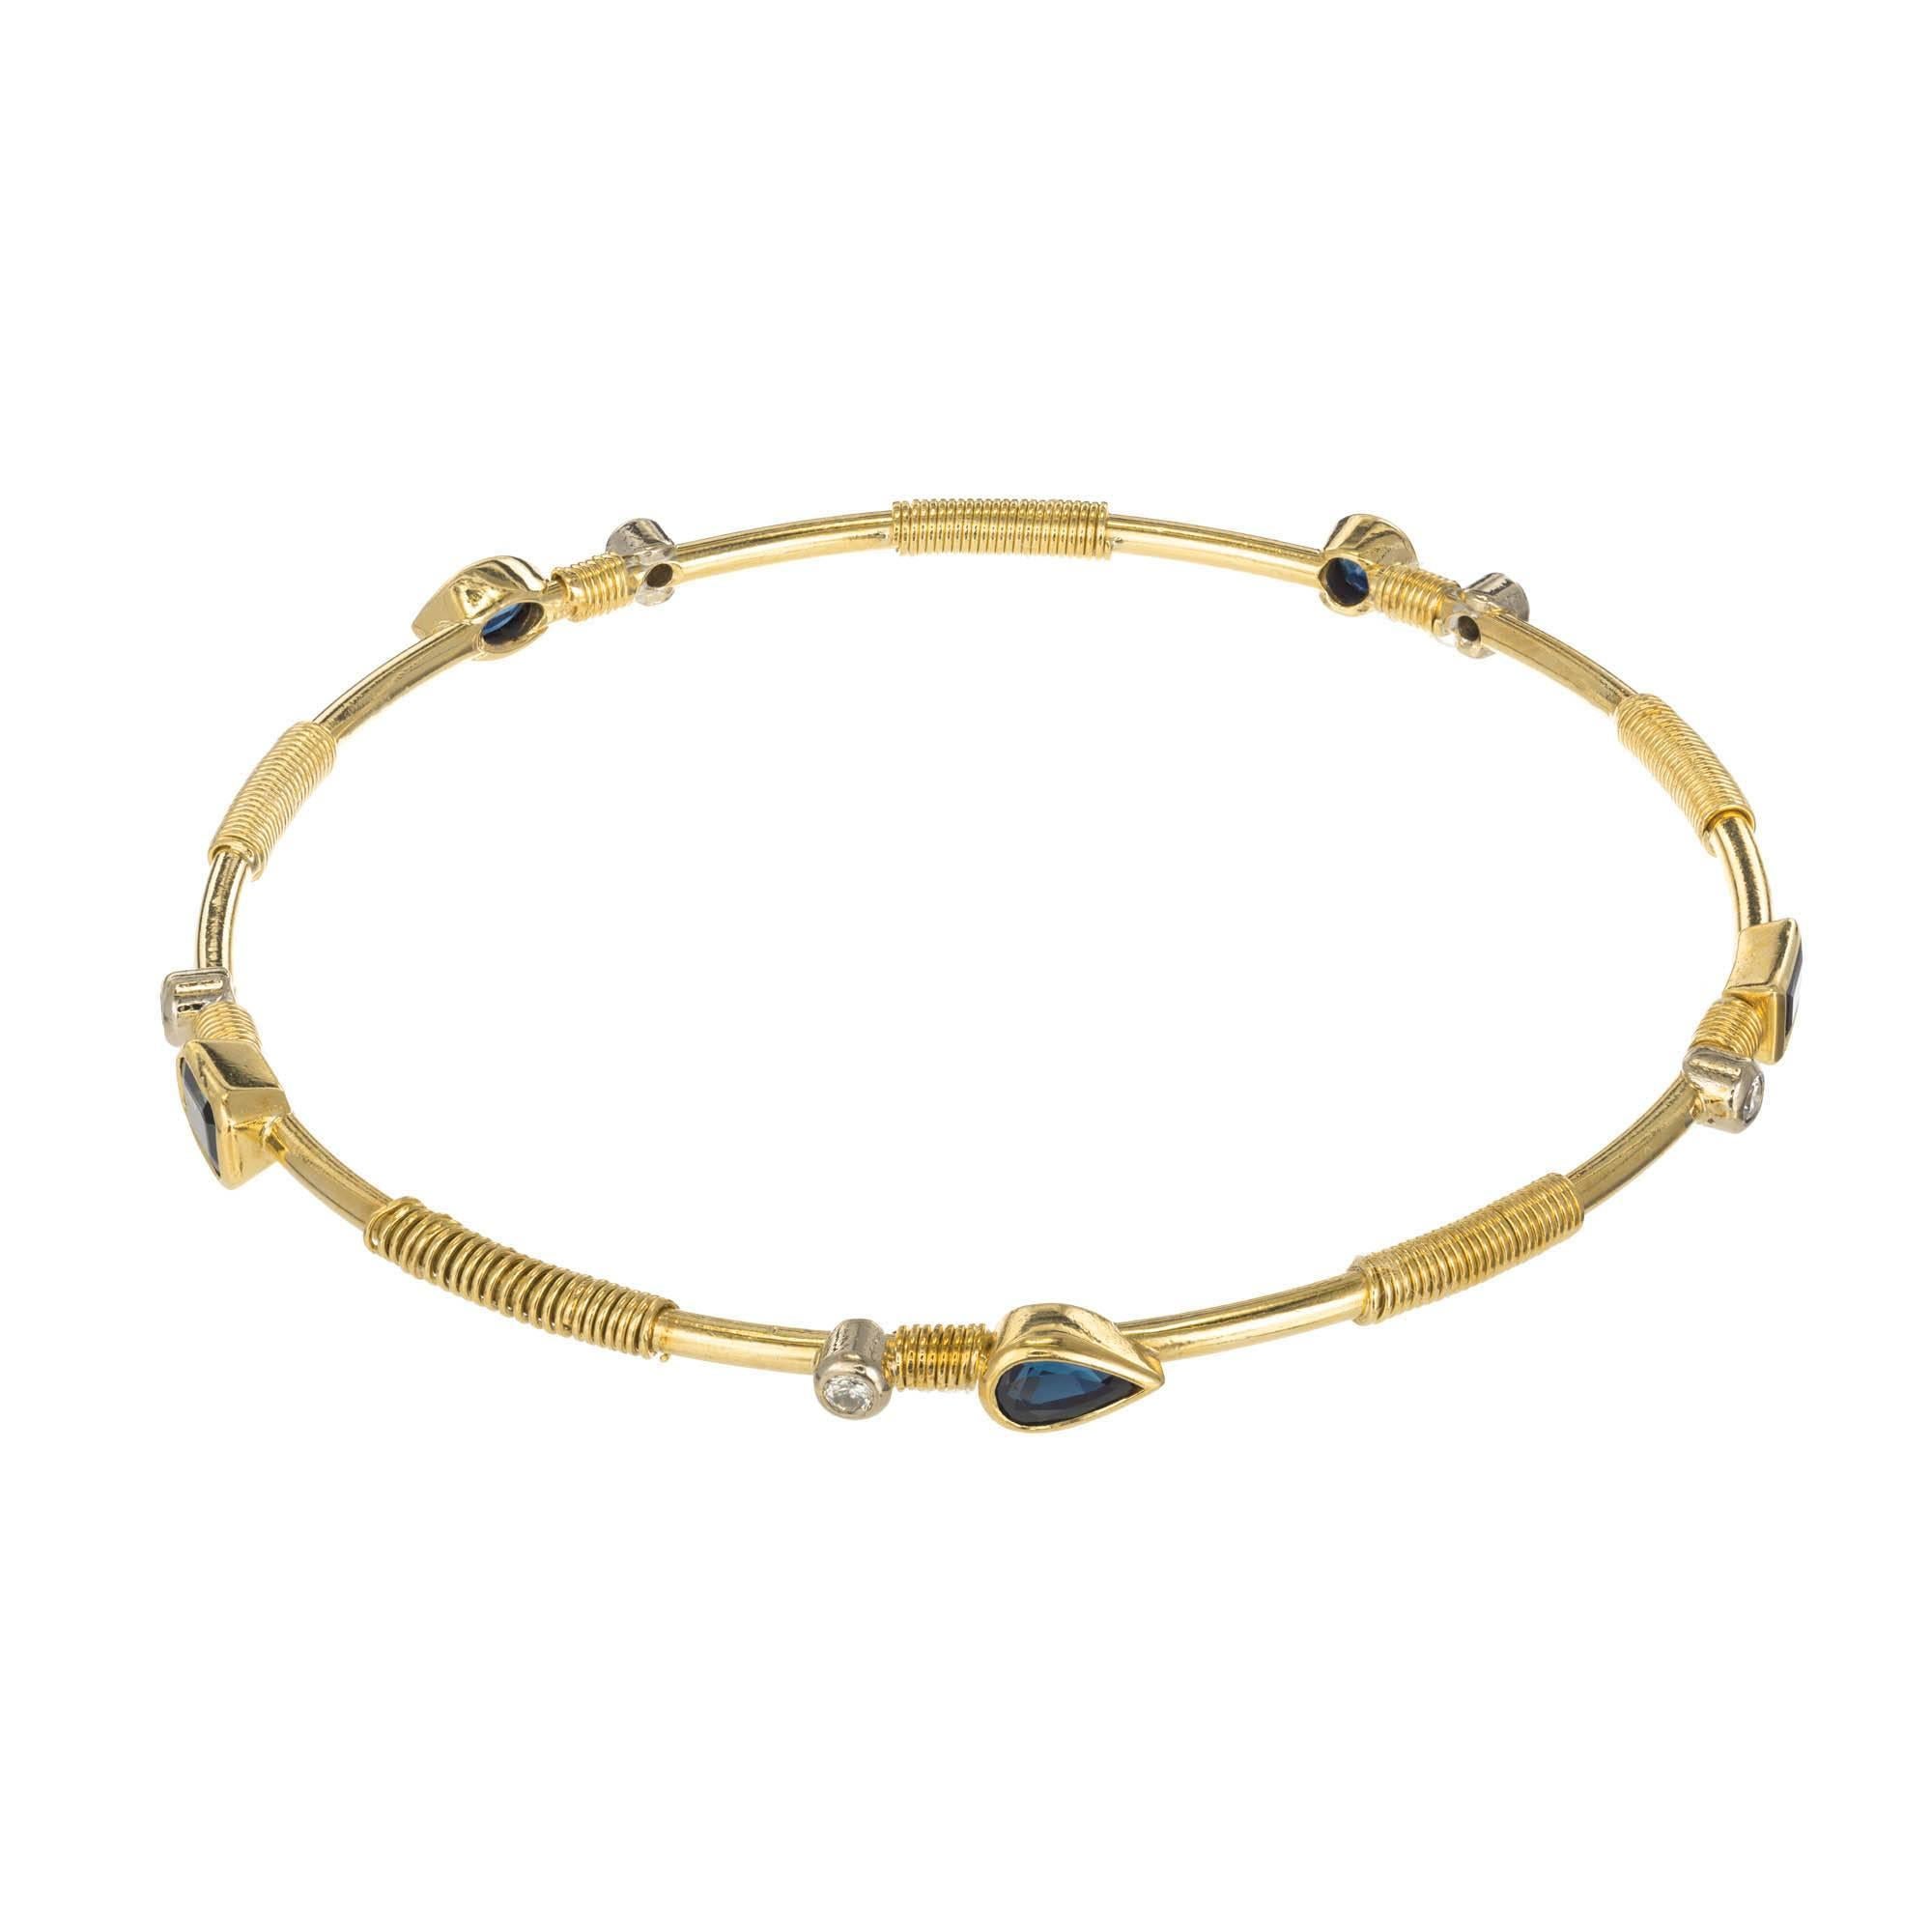 bracelet en or jaune 22k serti de saphirs biseautés de formes variées et de diamants ronds avec un motif de fil de fer en spirale entre les pierres.

1 saphir rond de 3,5 x 2,2 mm Environ .18 carats
1 saphir marquise 5.0 x 4.0 x 2.9